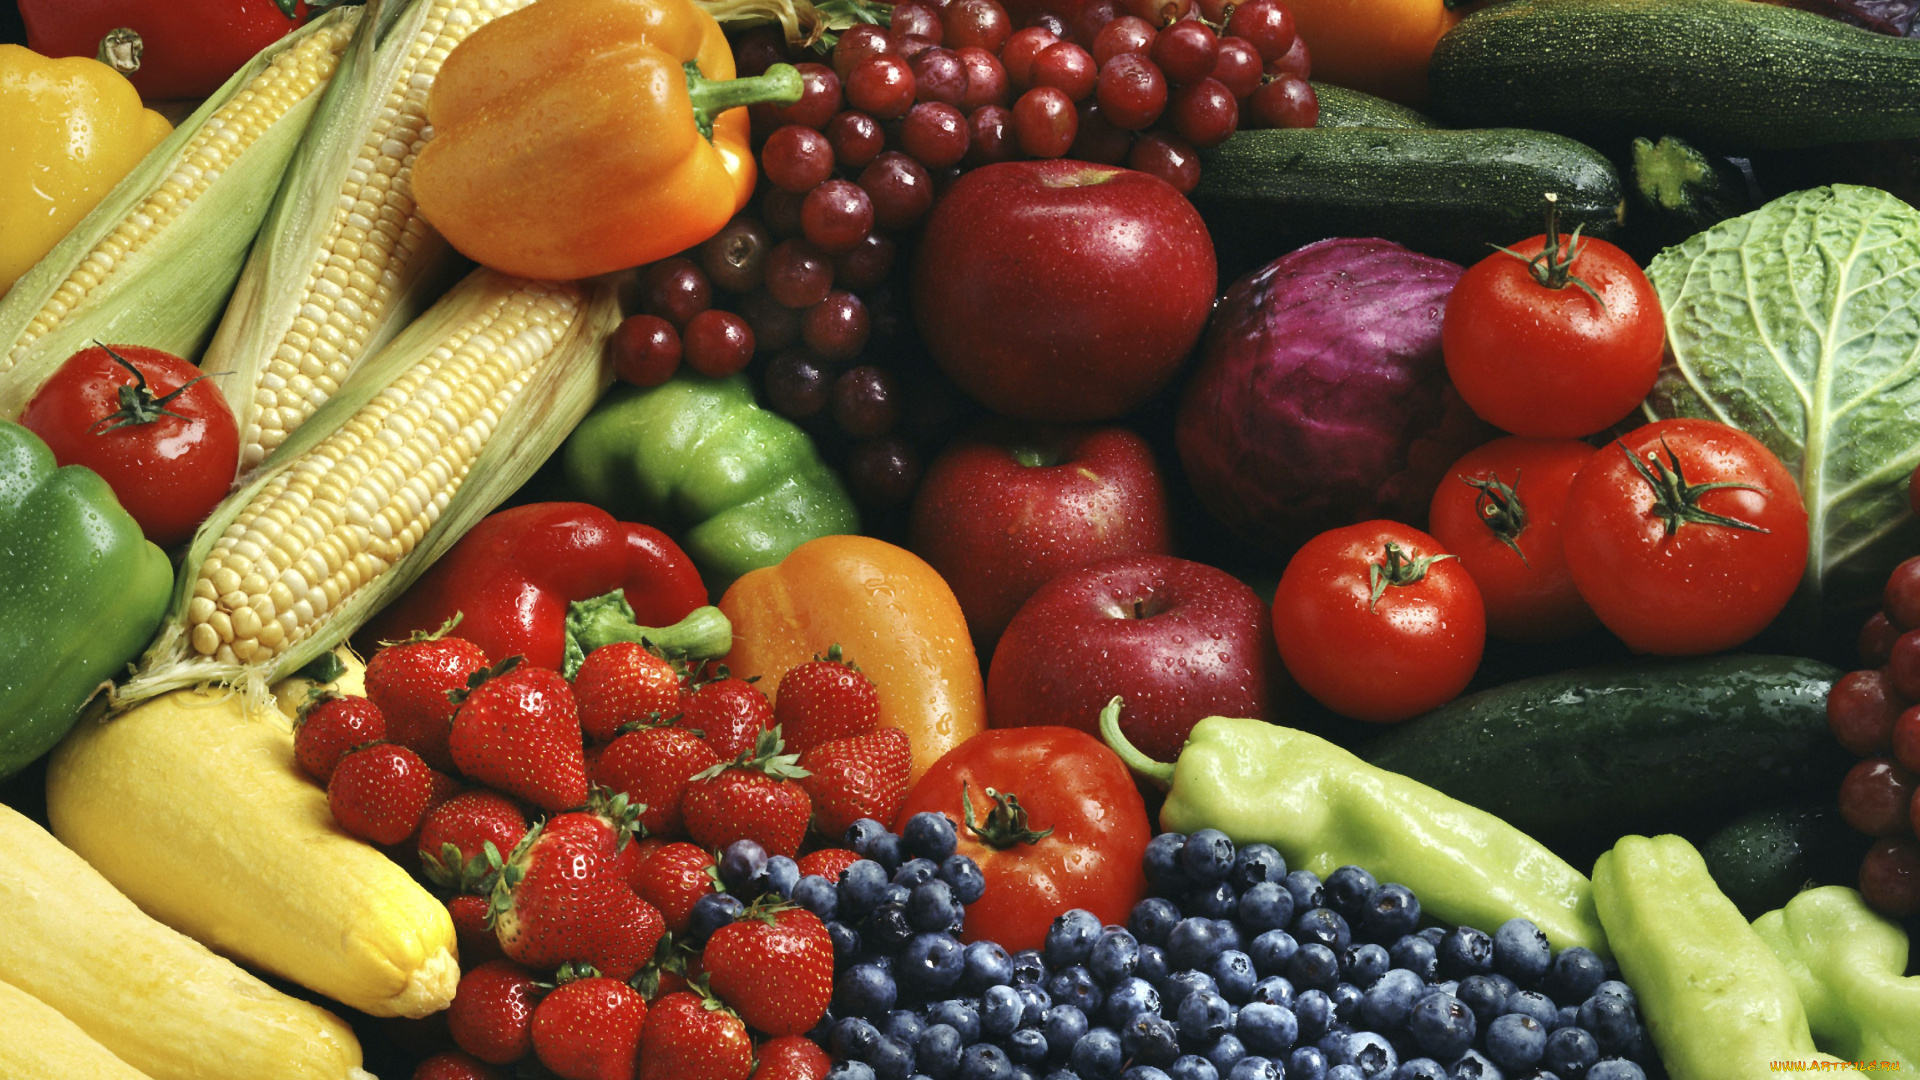 еда, фрукты, овощи, вместе, цуккини, помидоры, виноград, паприка, капуста, ягоды, черника, кукуруза, клубника, яблоки, томаты